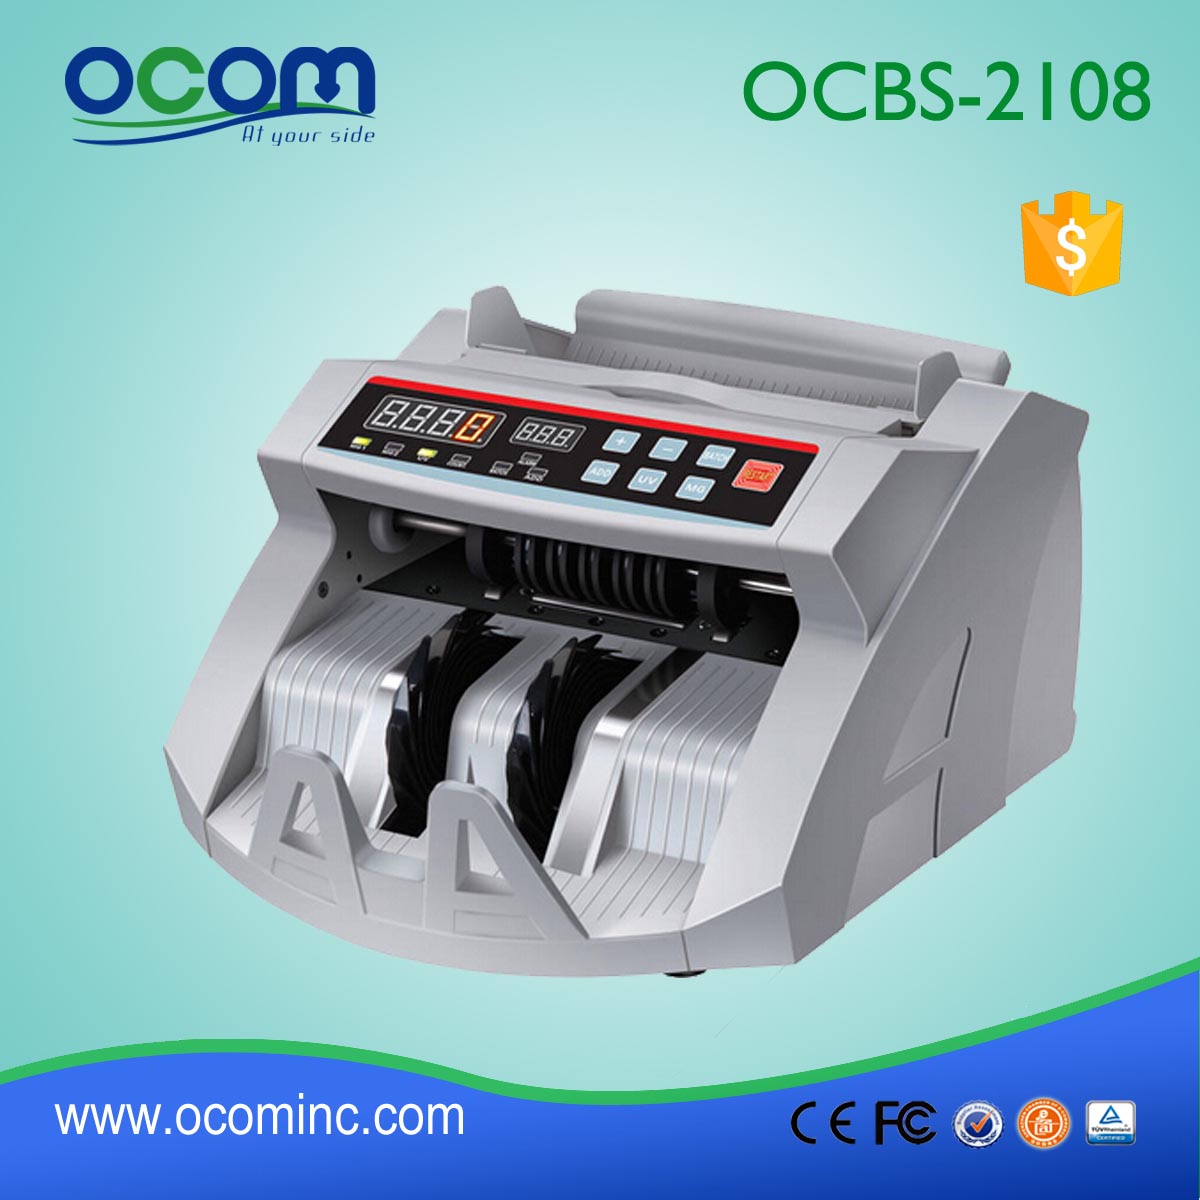 带假币检测的货币点钞机 (OCBC-2108)